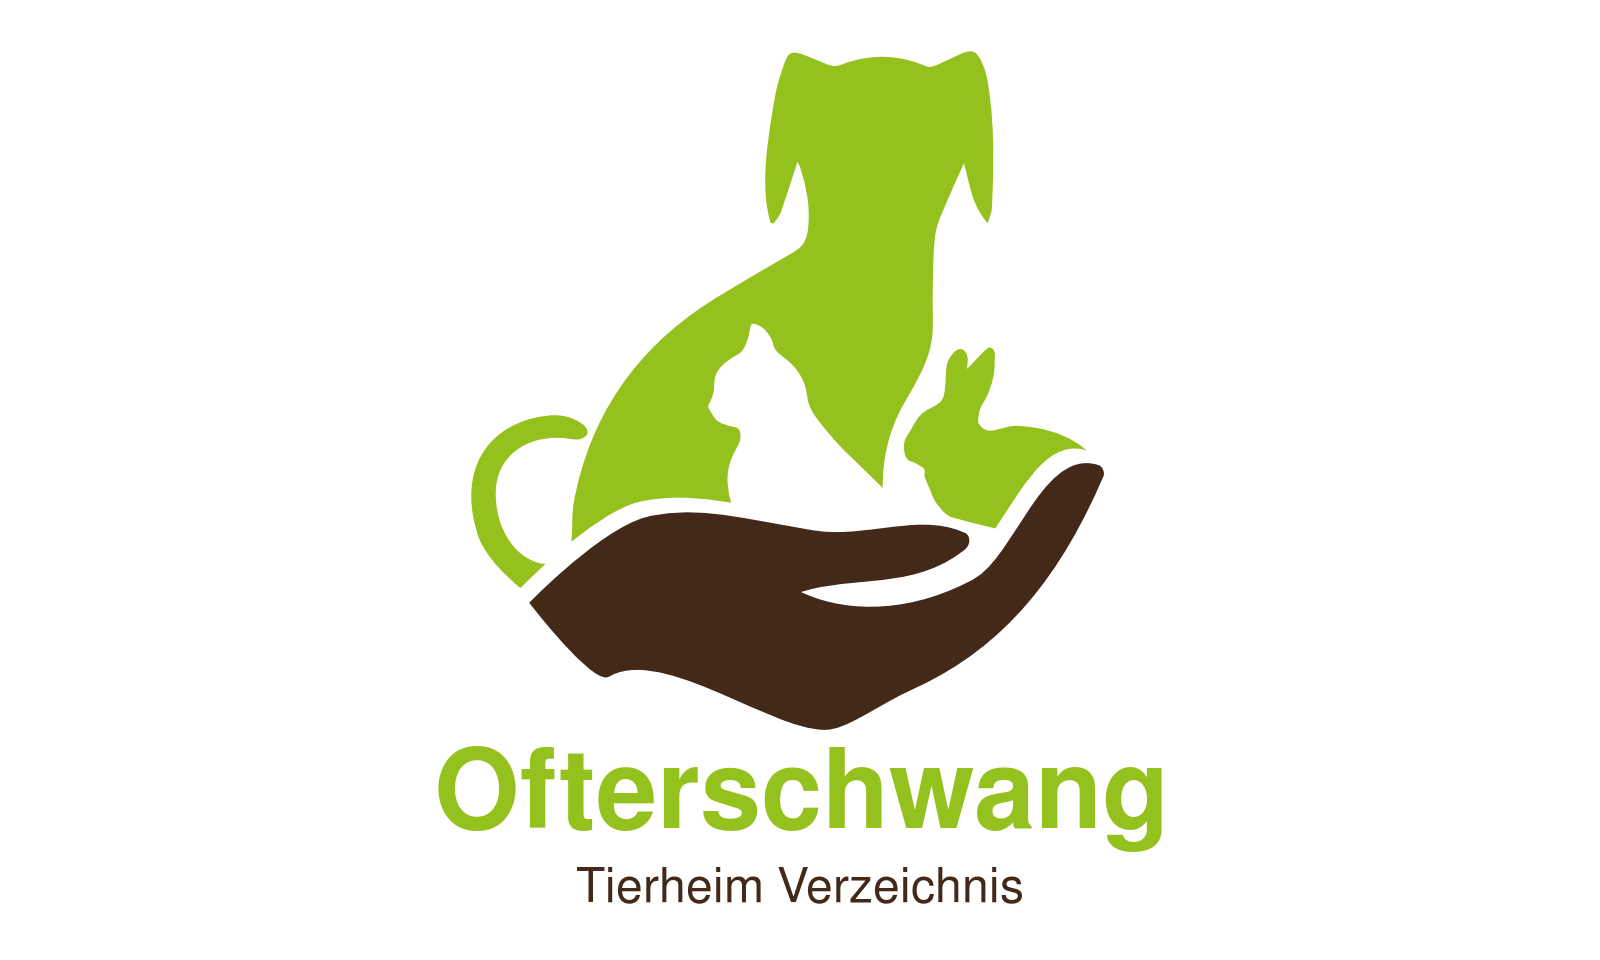 Tierheim Ofterschwang